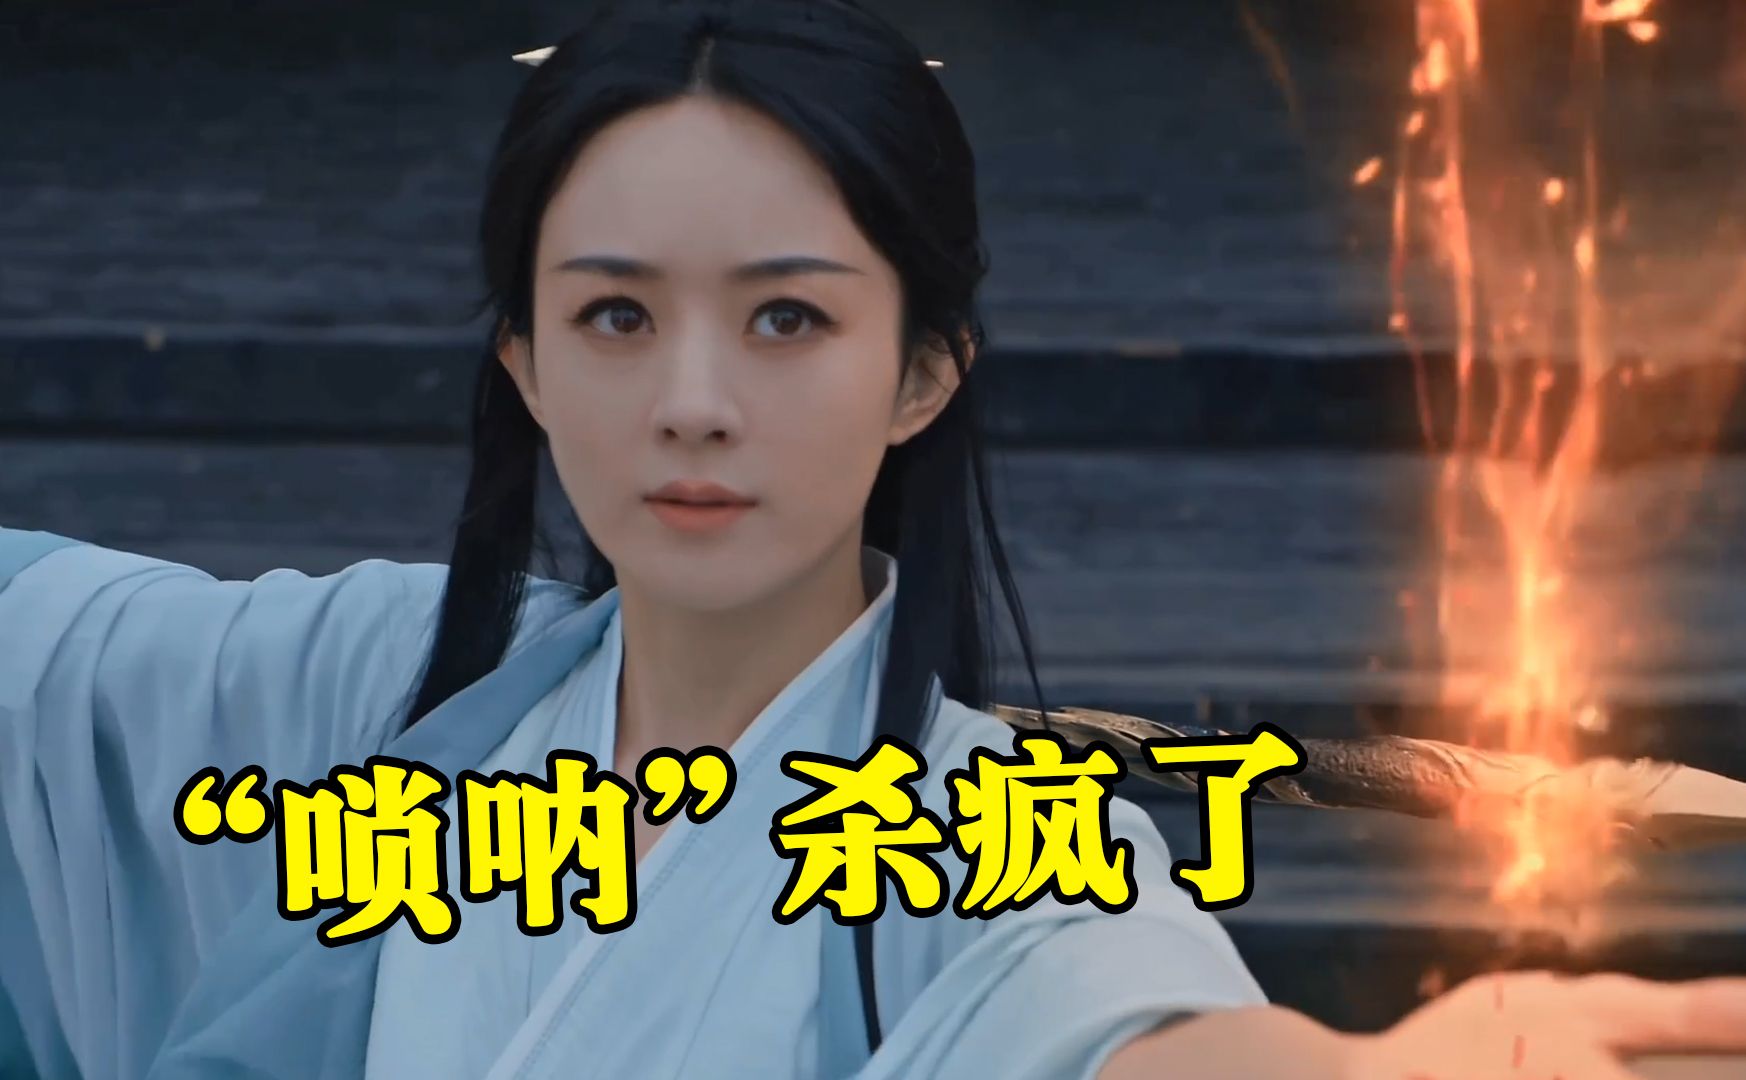 《与凤行》OST“杀疯了”，片头曲唢呐一响，这就是东方神话的压迫感